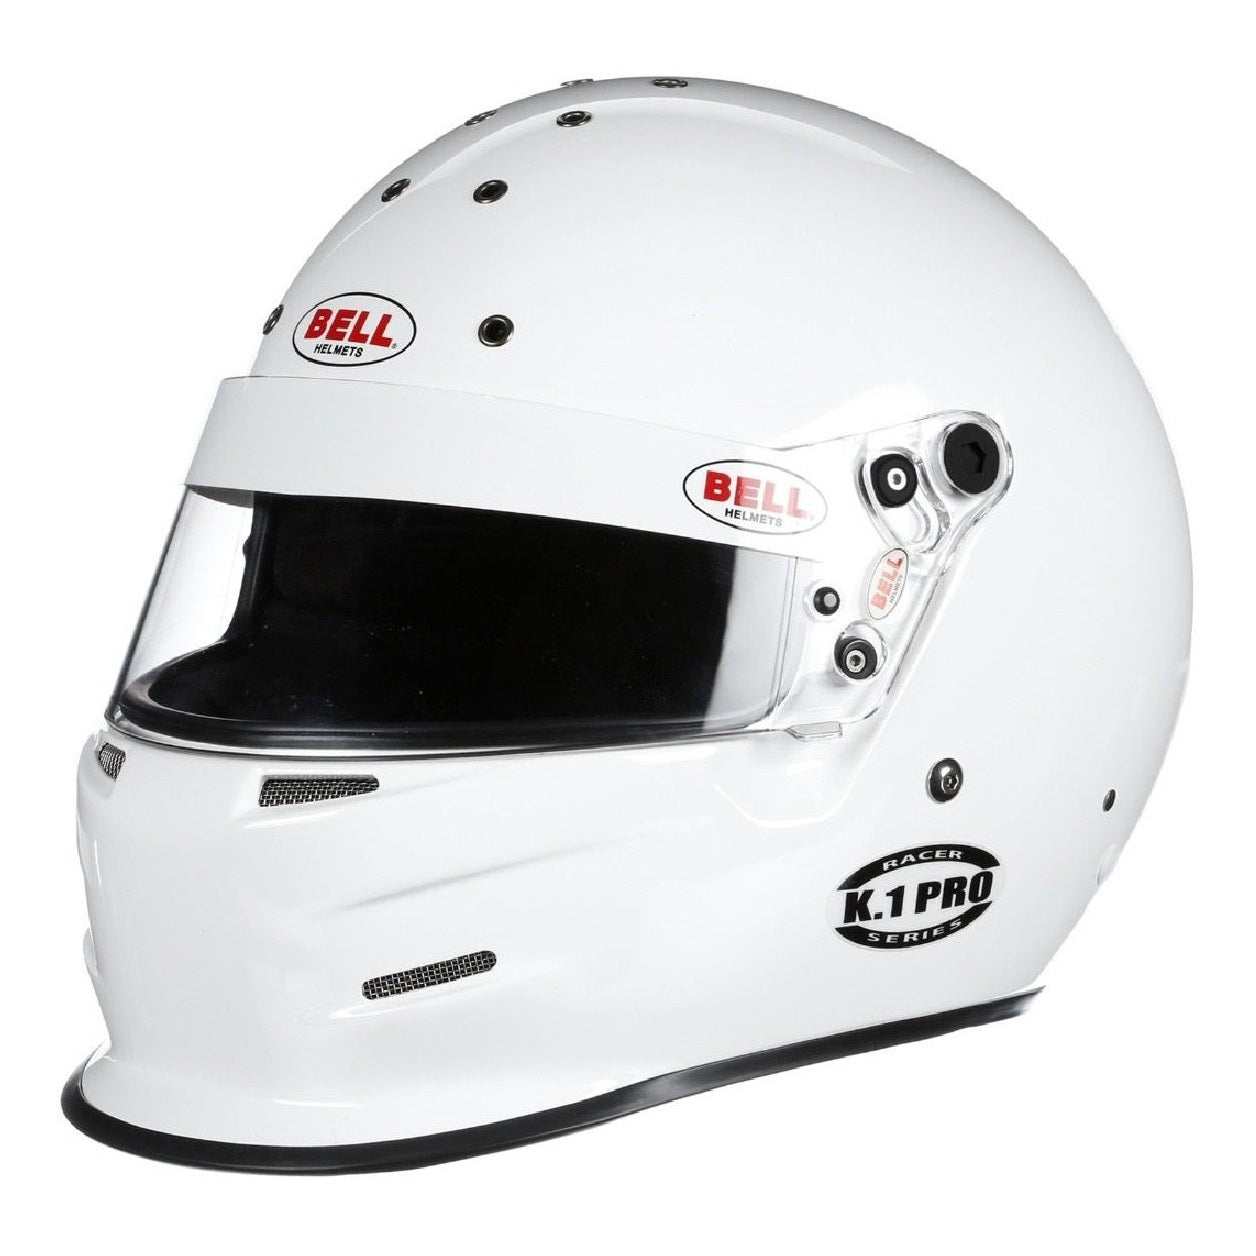 Bell K1 Pro Helmet